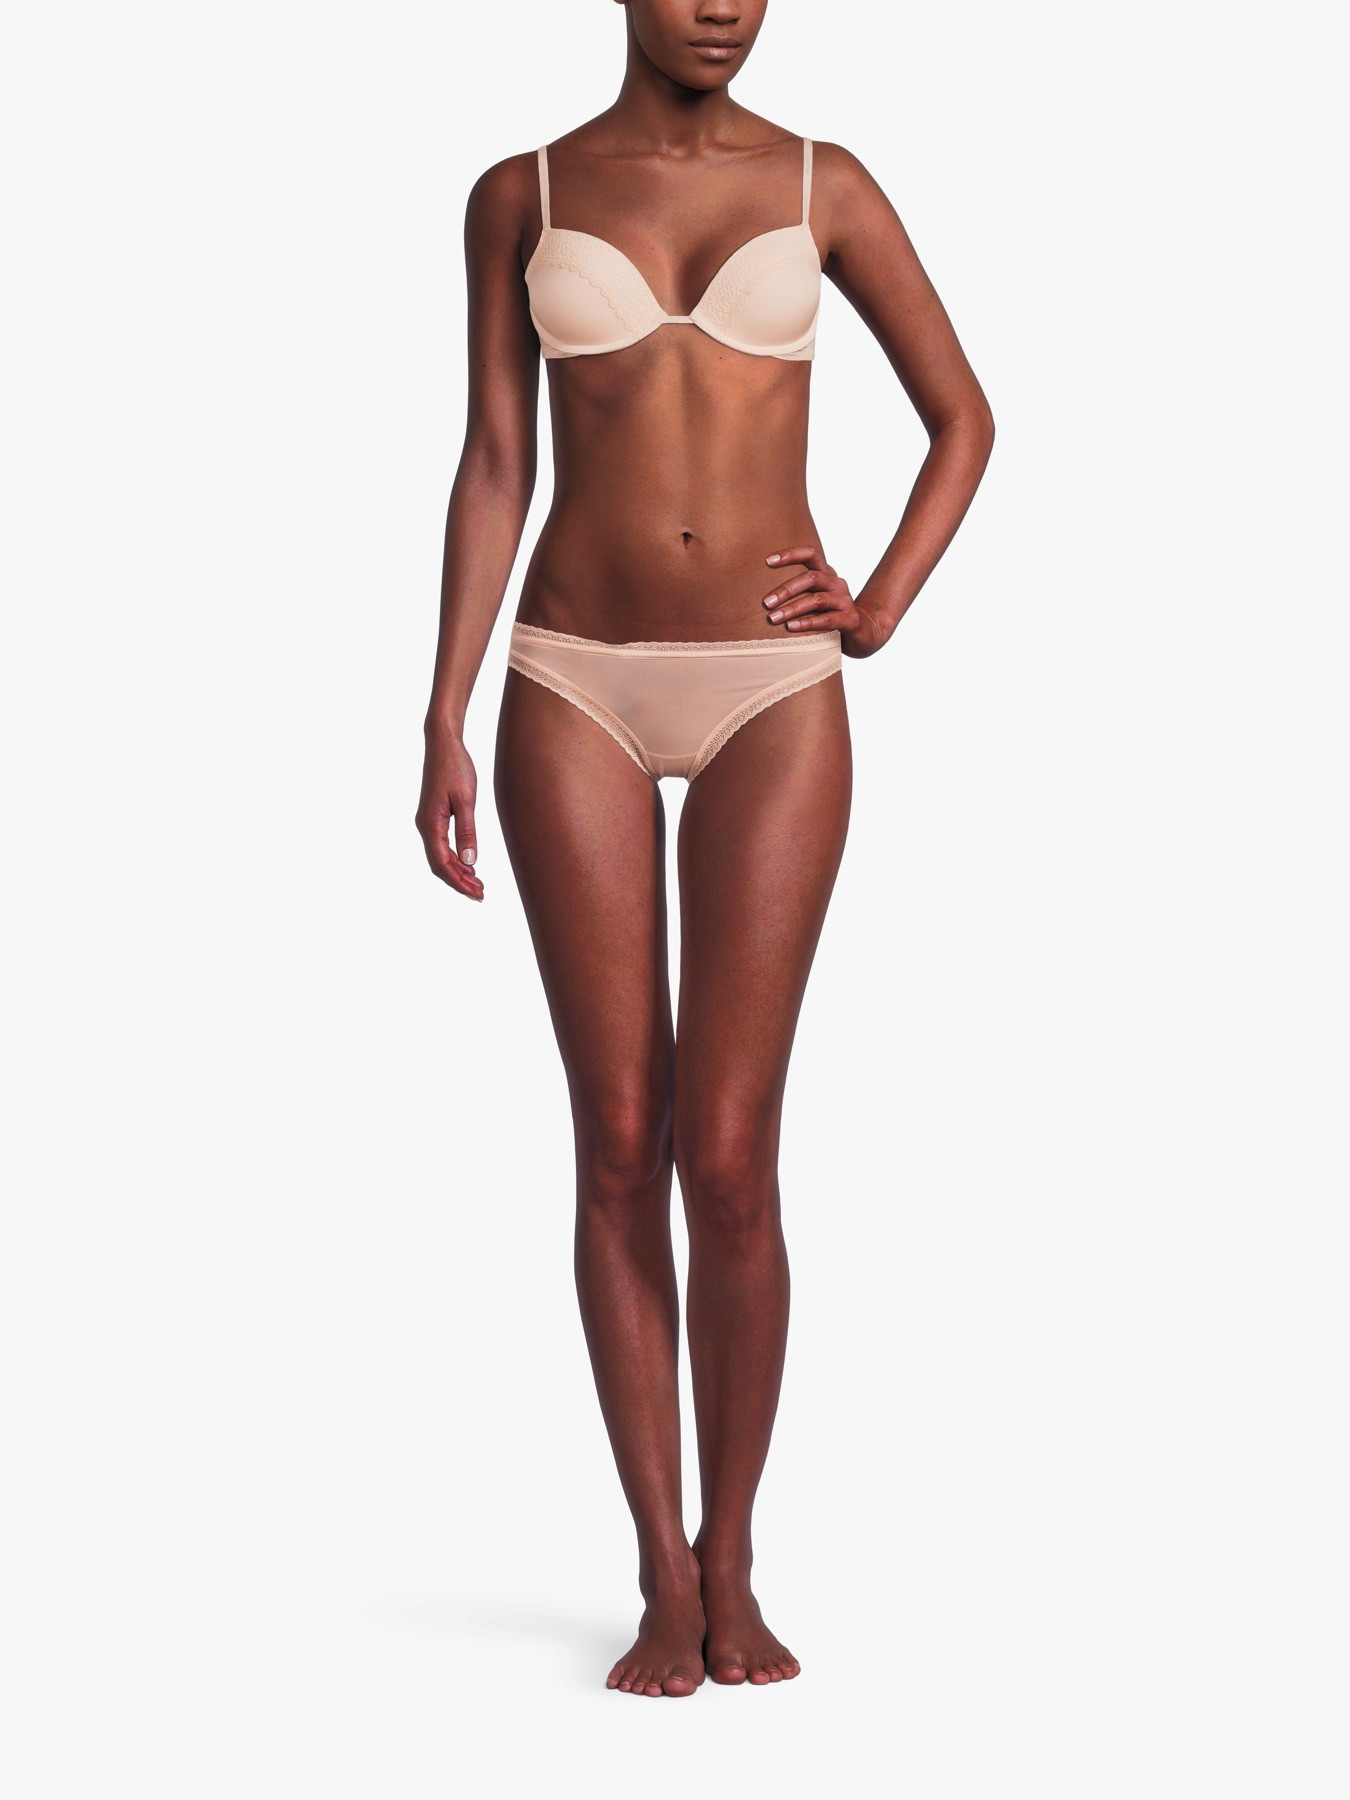 Calvin Klein - Bottom's Up Refresh Bikini Underwear in Honey Almond